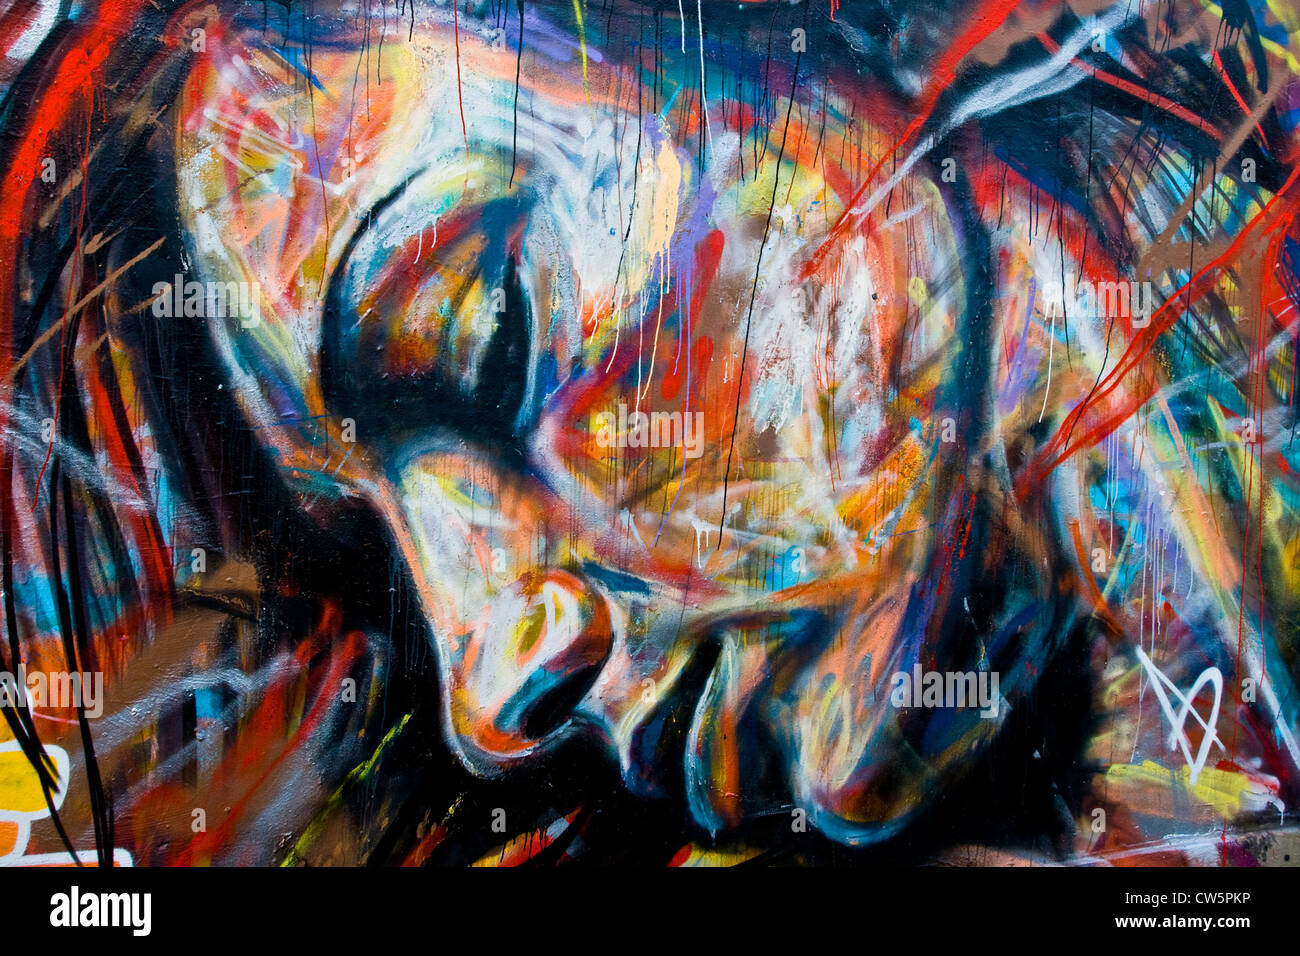 Les graffitis urbains street art peinture murale close-up de filles womans face est de Londres Angleterre Europe Banque D'Images